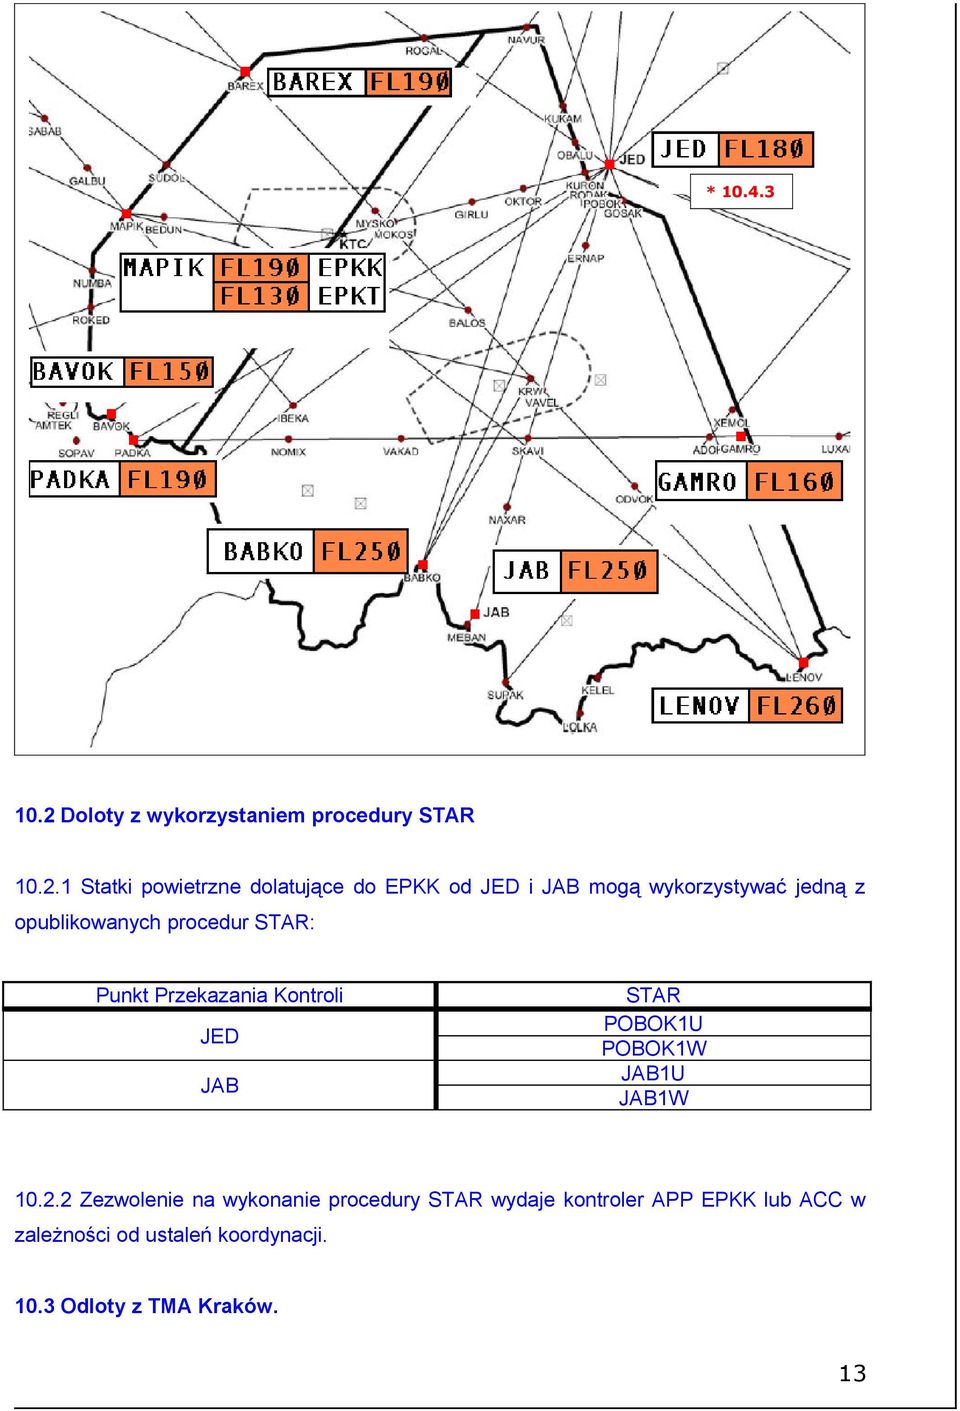 1 Statki powietrzne dolatujące do EPKK od JED i JAB mogą wykorzystywać jedną z opublikowanych